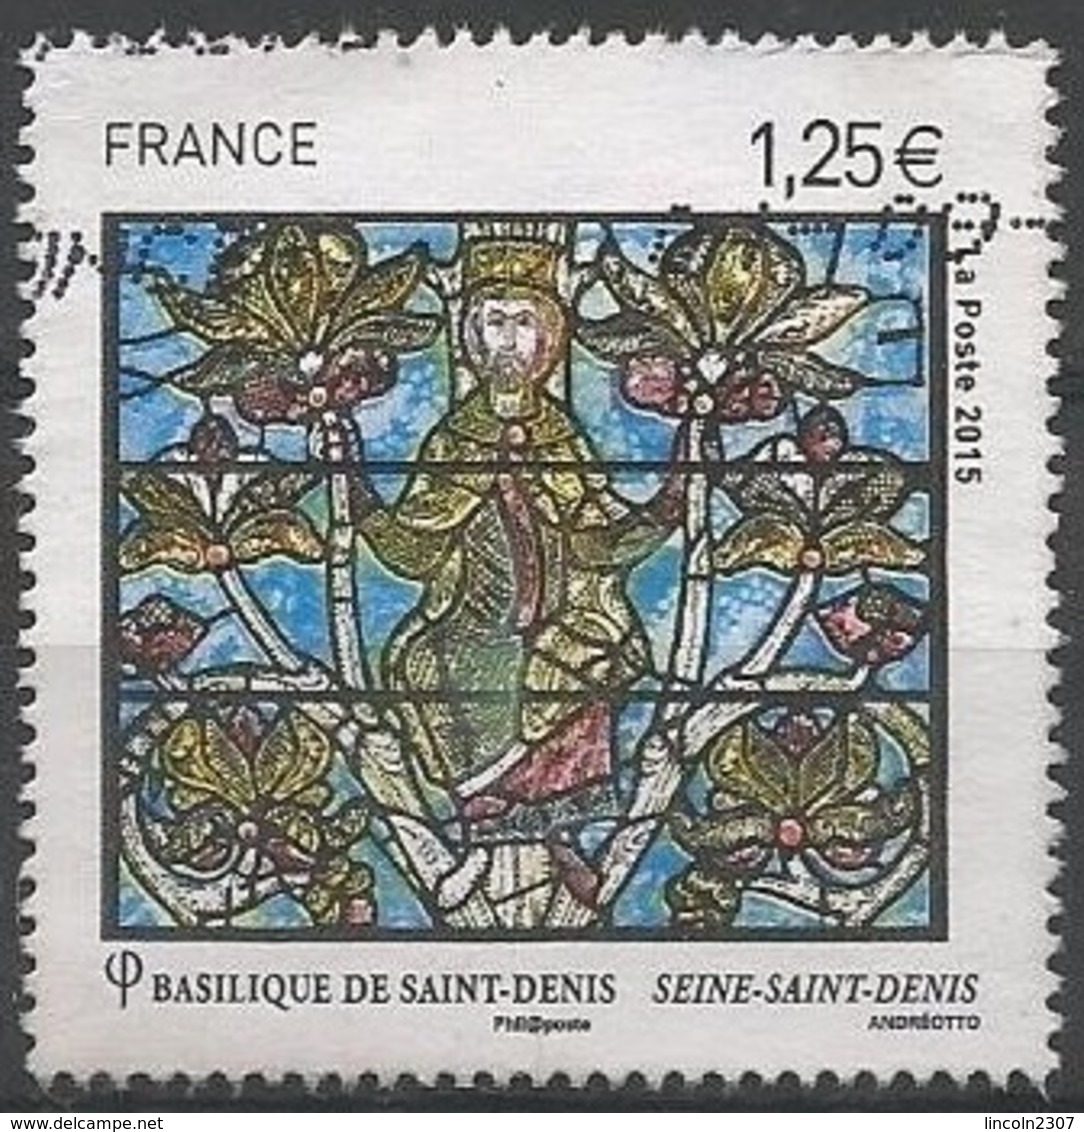 LSJP FRANCE BASILICA SAINT DENIS RELIGION 2015 - Used Stamps